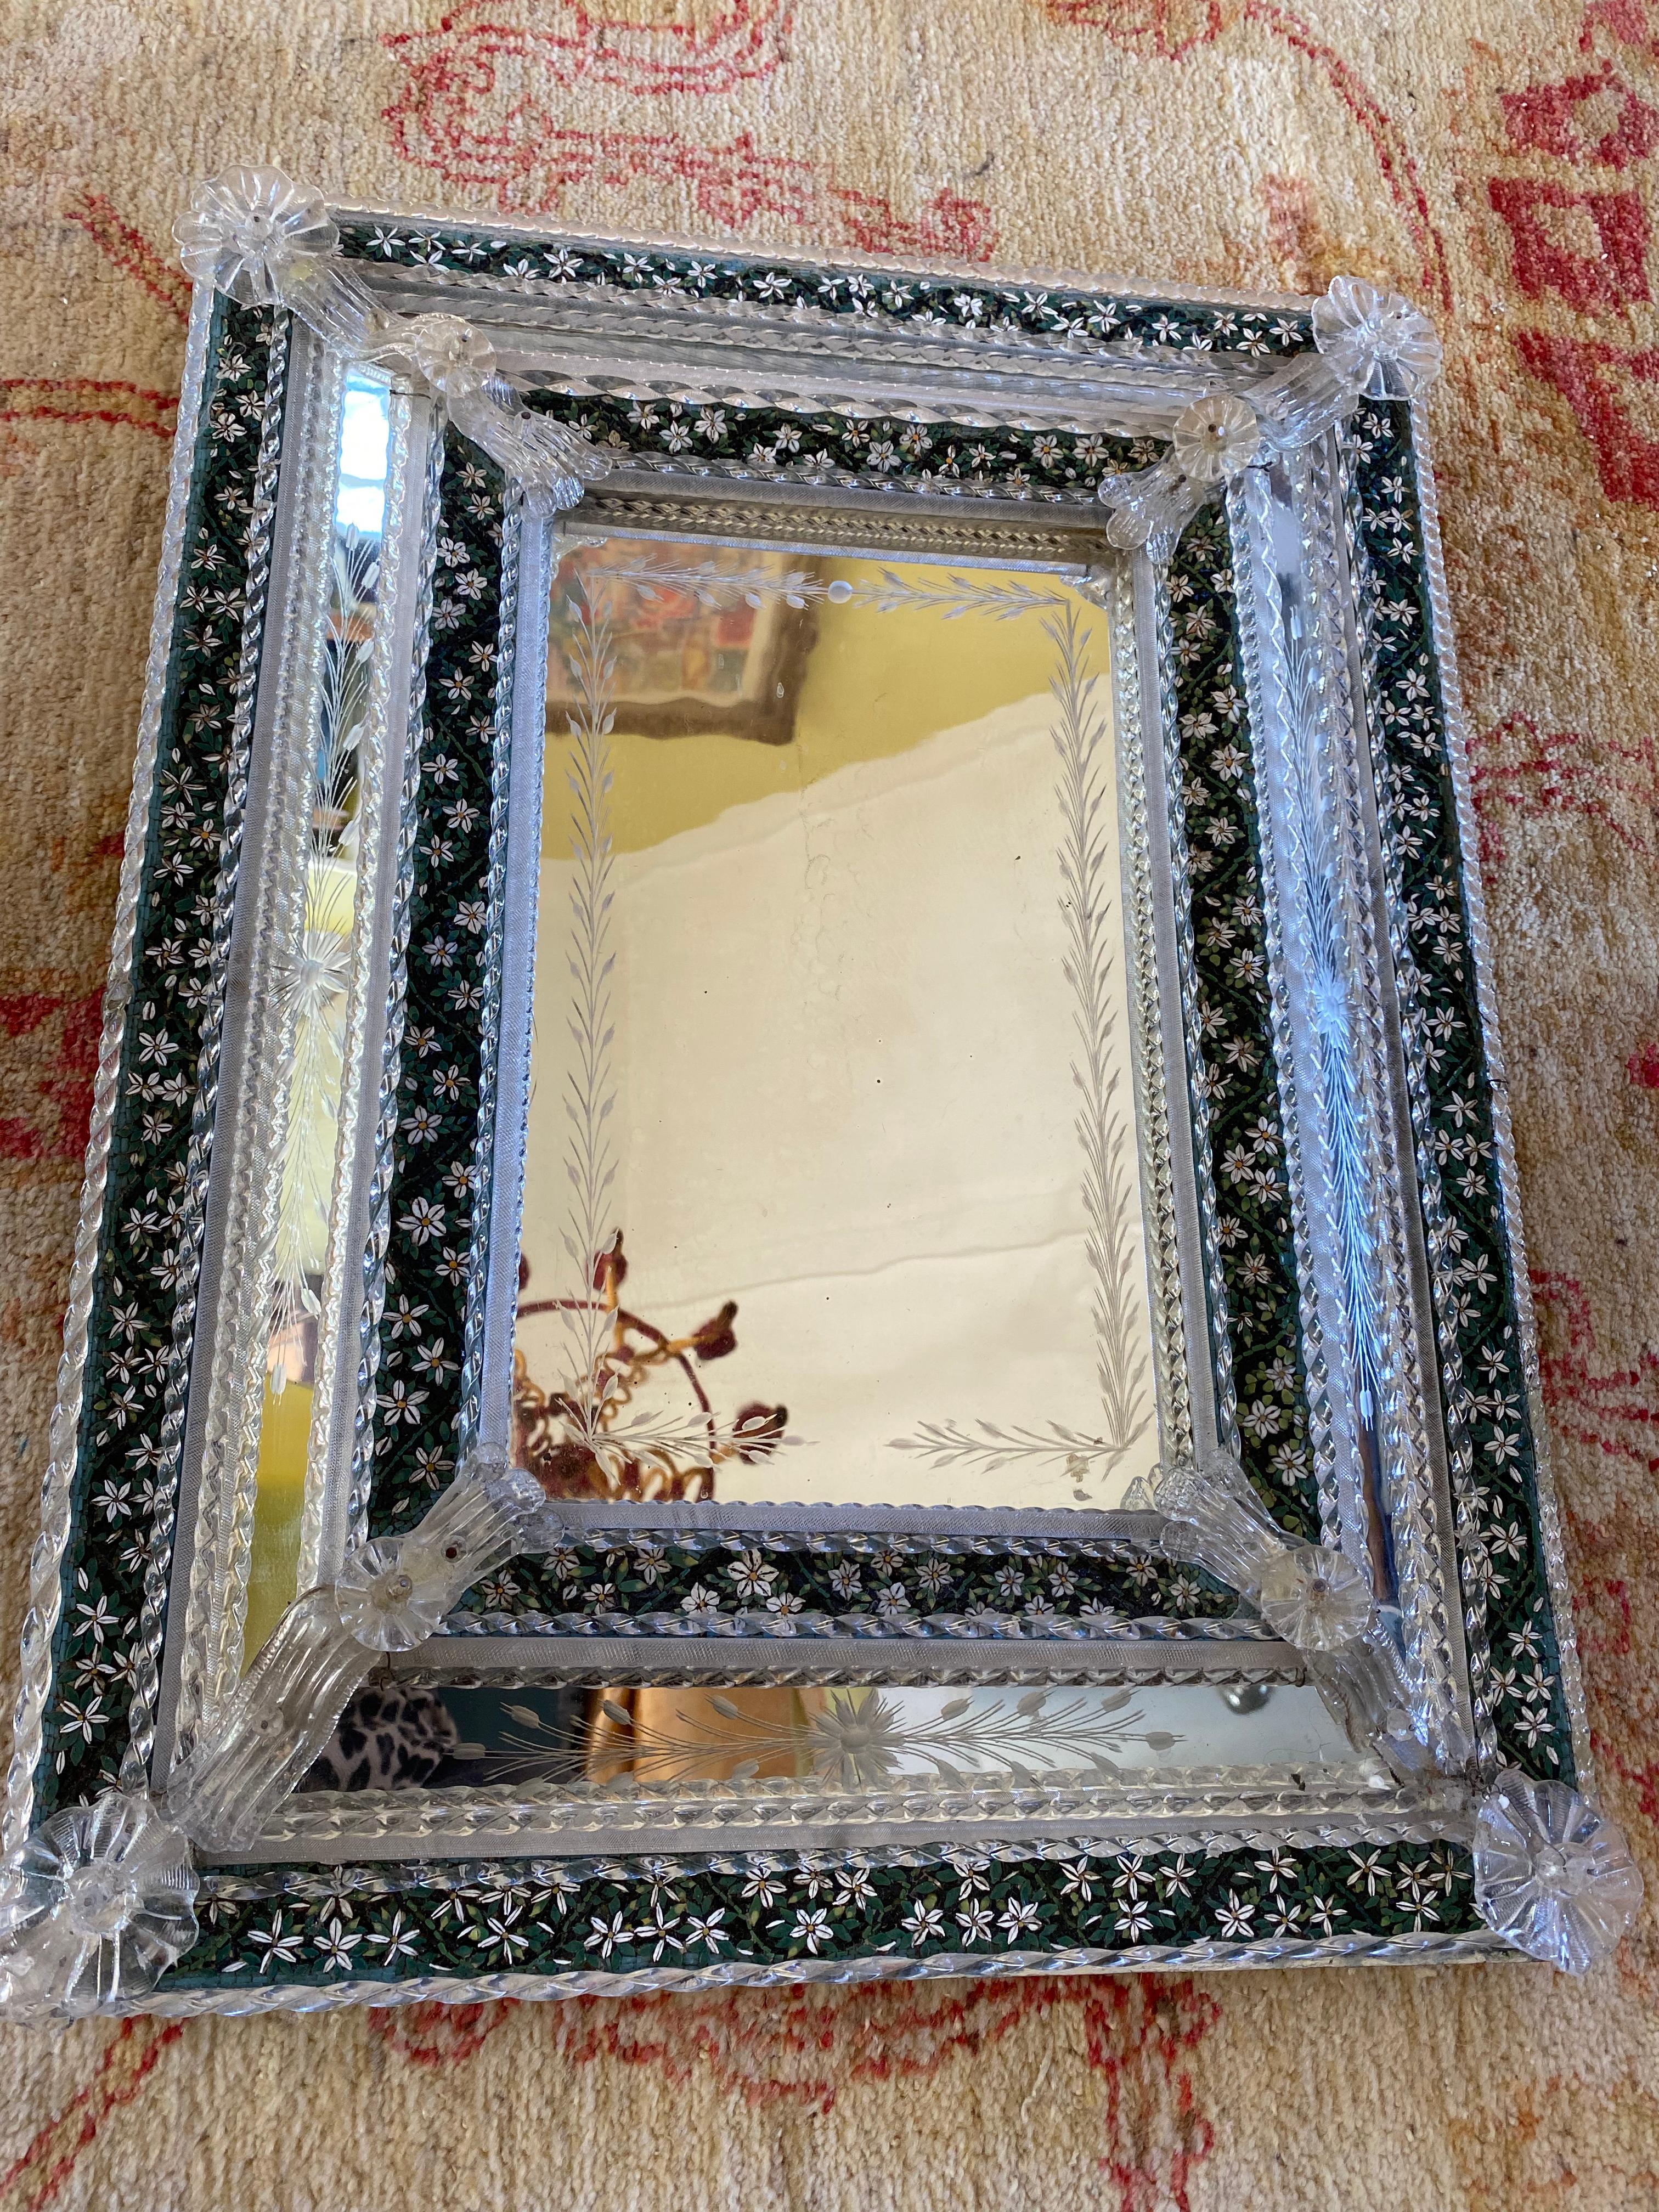 Rare miroir vénitien gravé avec micro-mosaïque en pate de verre, détails sur toute la surface de verre soufflé et baguettes torsadées. Il est placé dans un cadre en bois. La micro-mosaïque de cette pièce est probablement une œuvre vénitienne datant